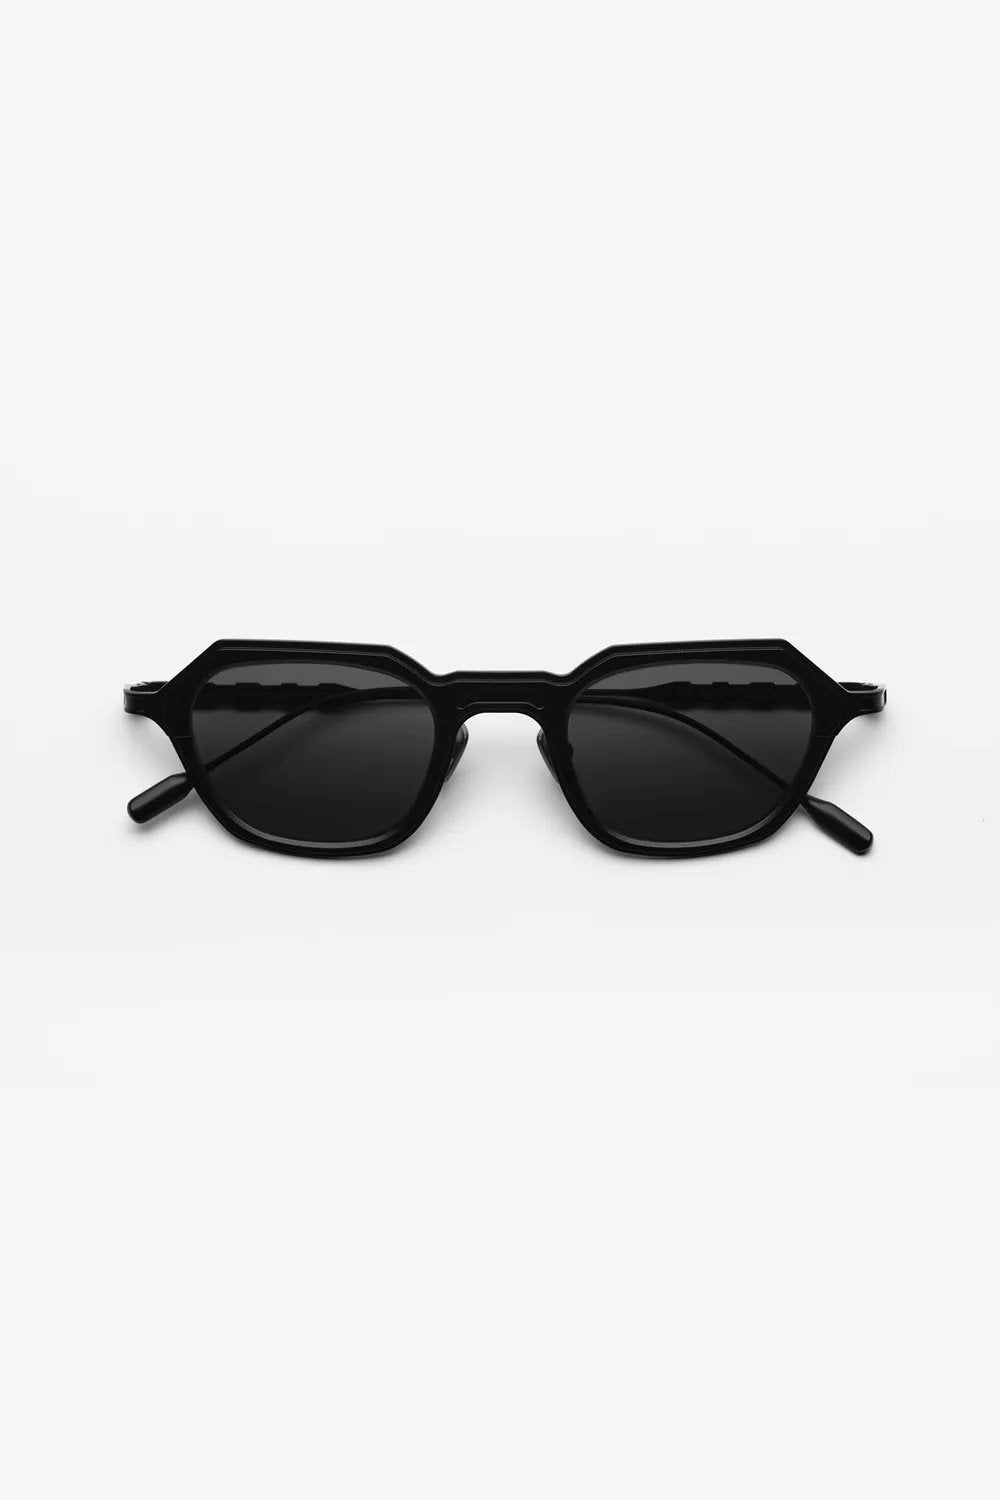 Capote - CC34 Sunglasses Capote Black ONES 